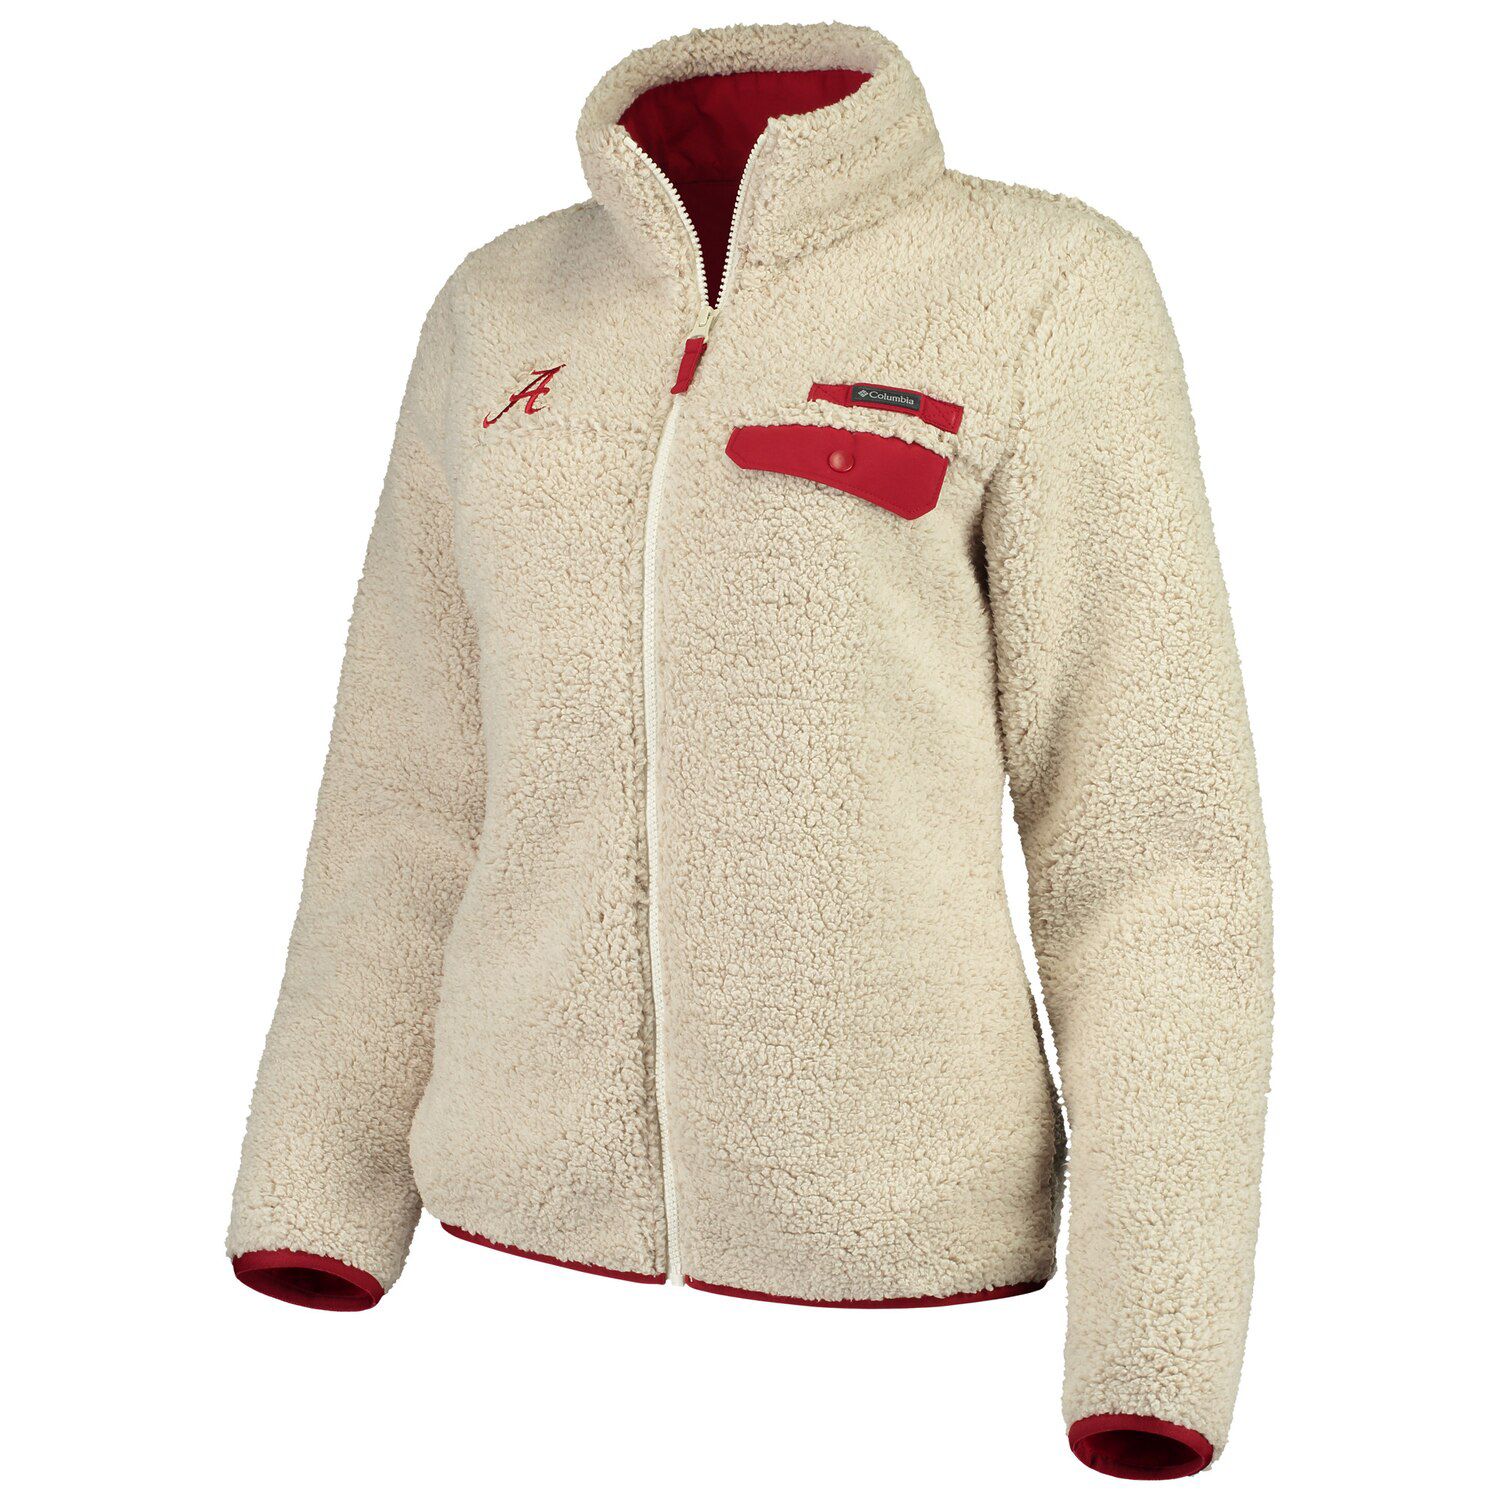 kohls women's columbia fleece jacket